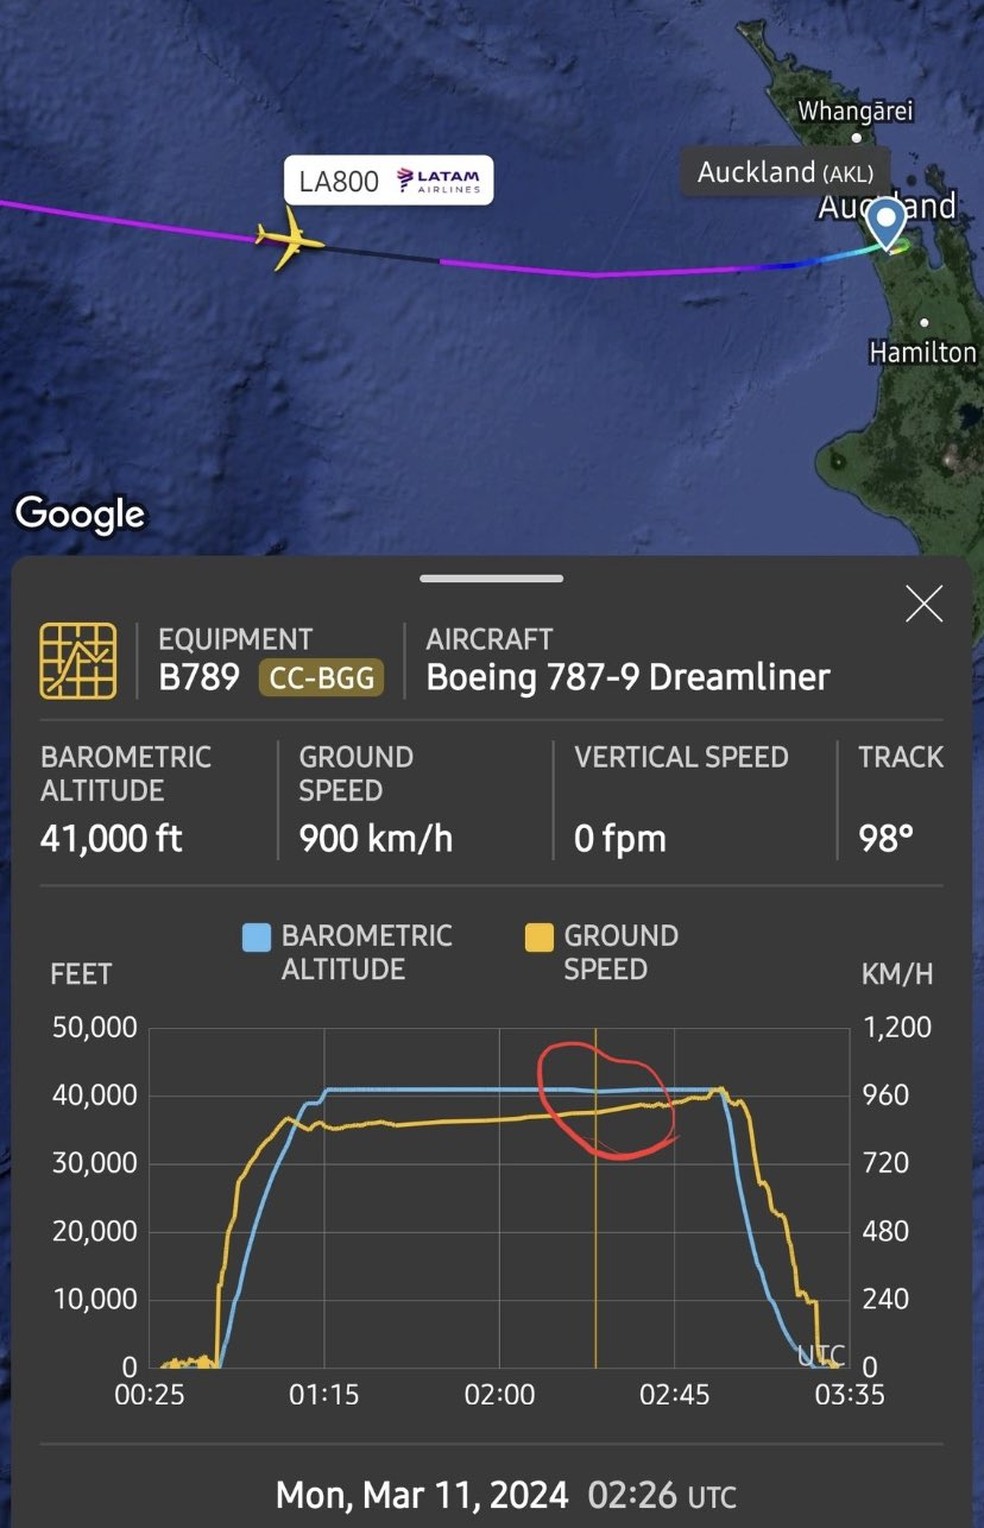 Imagem do site Flightradar24 mostra trajeto do voo LA800, da Latam, entre Sydney e Auckland; o destaque em vermelho mostra o momento em que houve indicação de uma perda brusa de altitude — Foto: Reprodução/Flightradar24